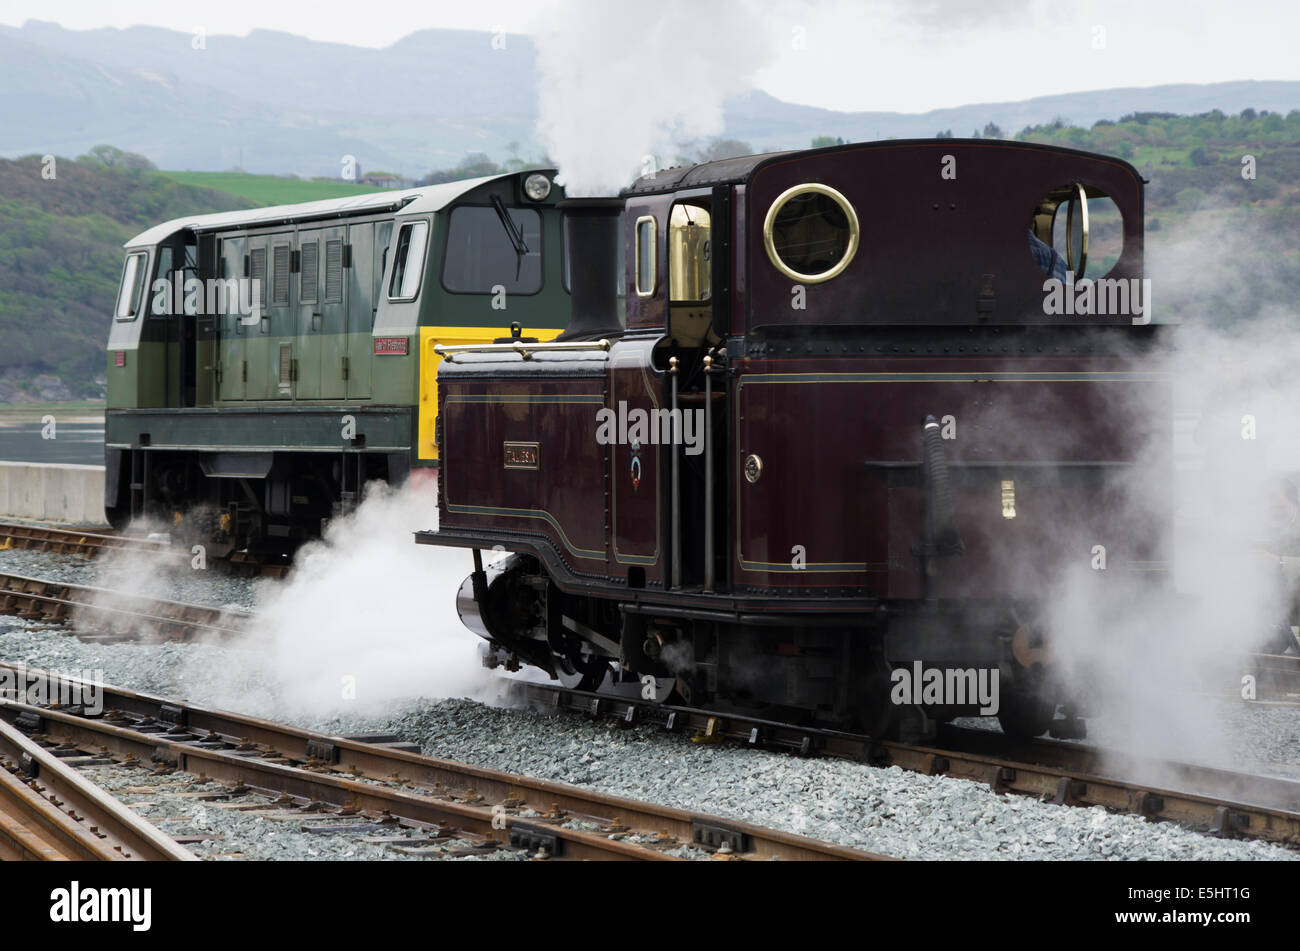 Ffestiniog Railway et à vapeur Locomotives diesel 'Taliesin' et 'Vallée de Ffestiniog' à Porthmadog Harbour Station Banque D'Images